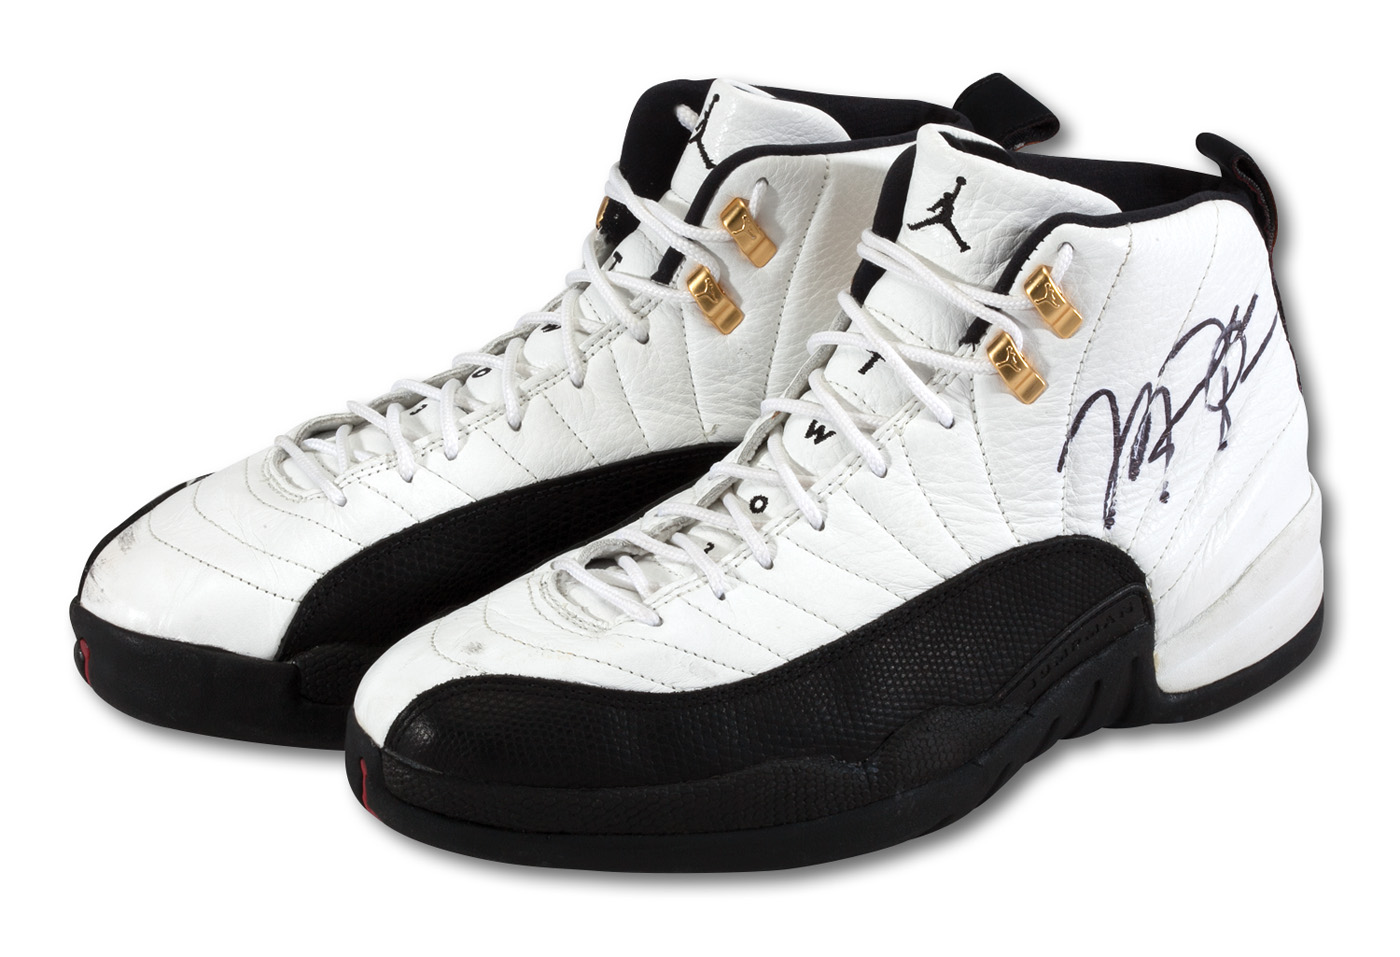 Michael Jordan Autographed Nike Air Jordan 12 Retro Flu Game Shoes